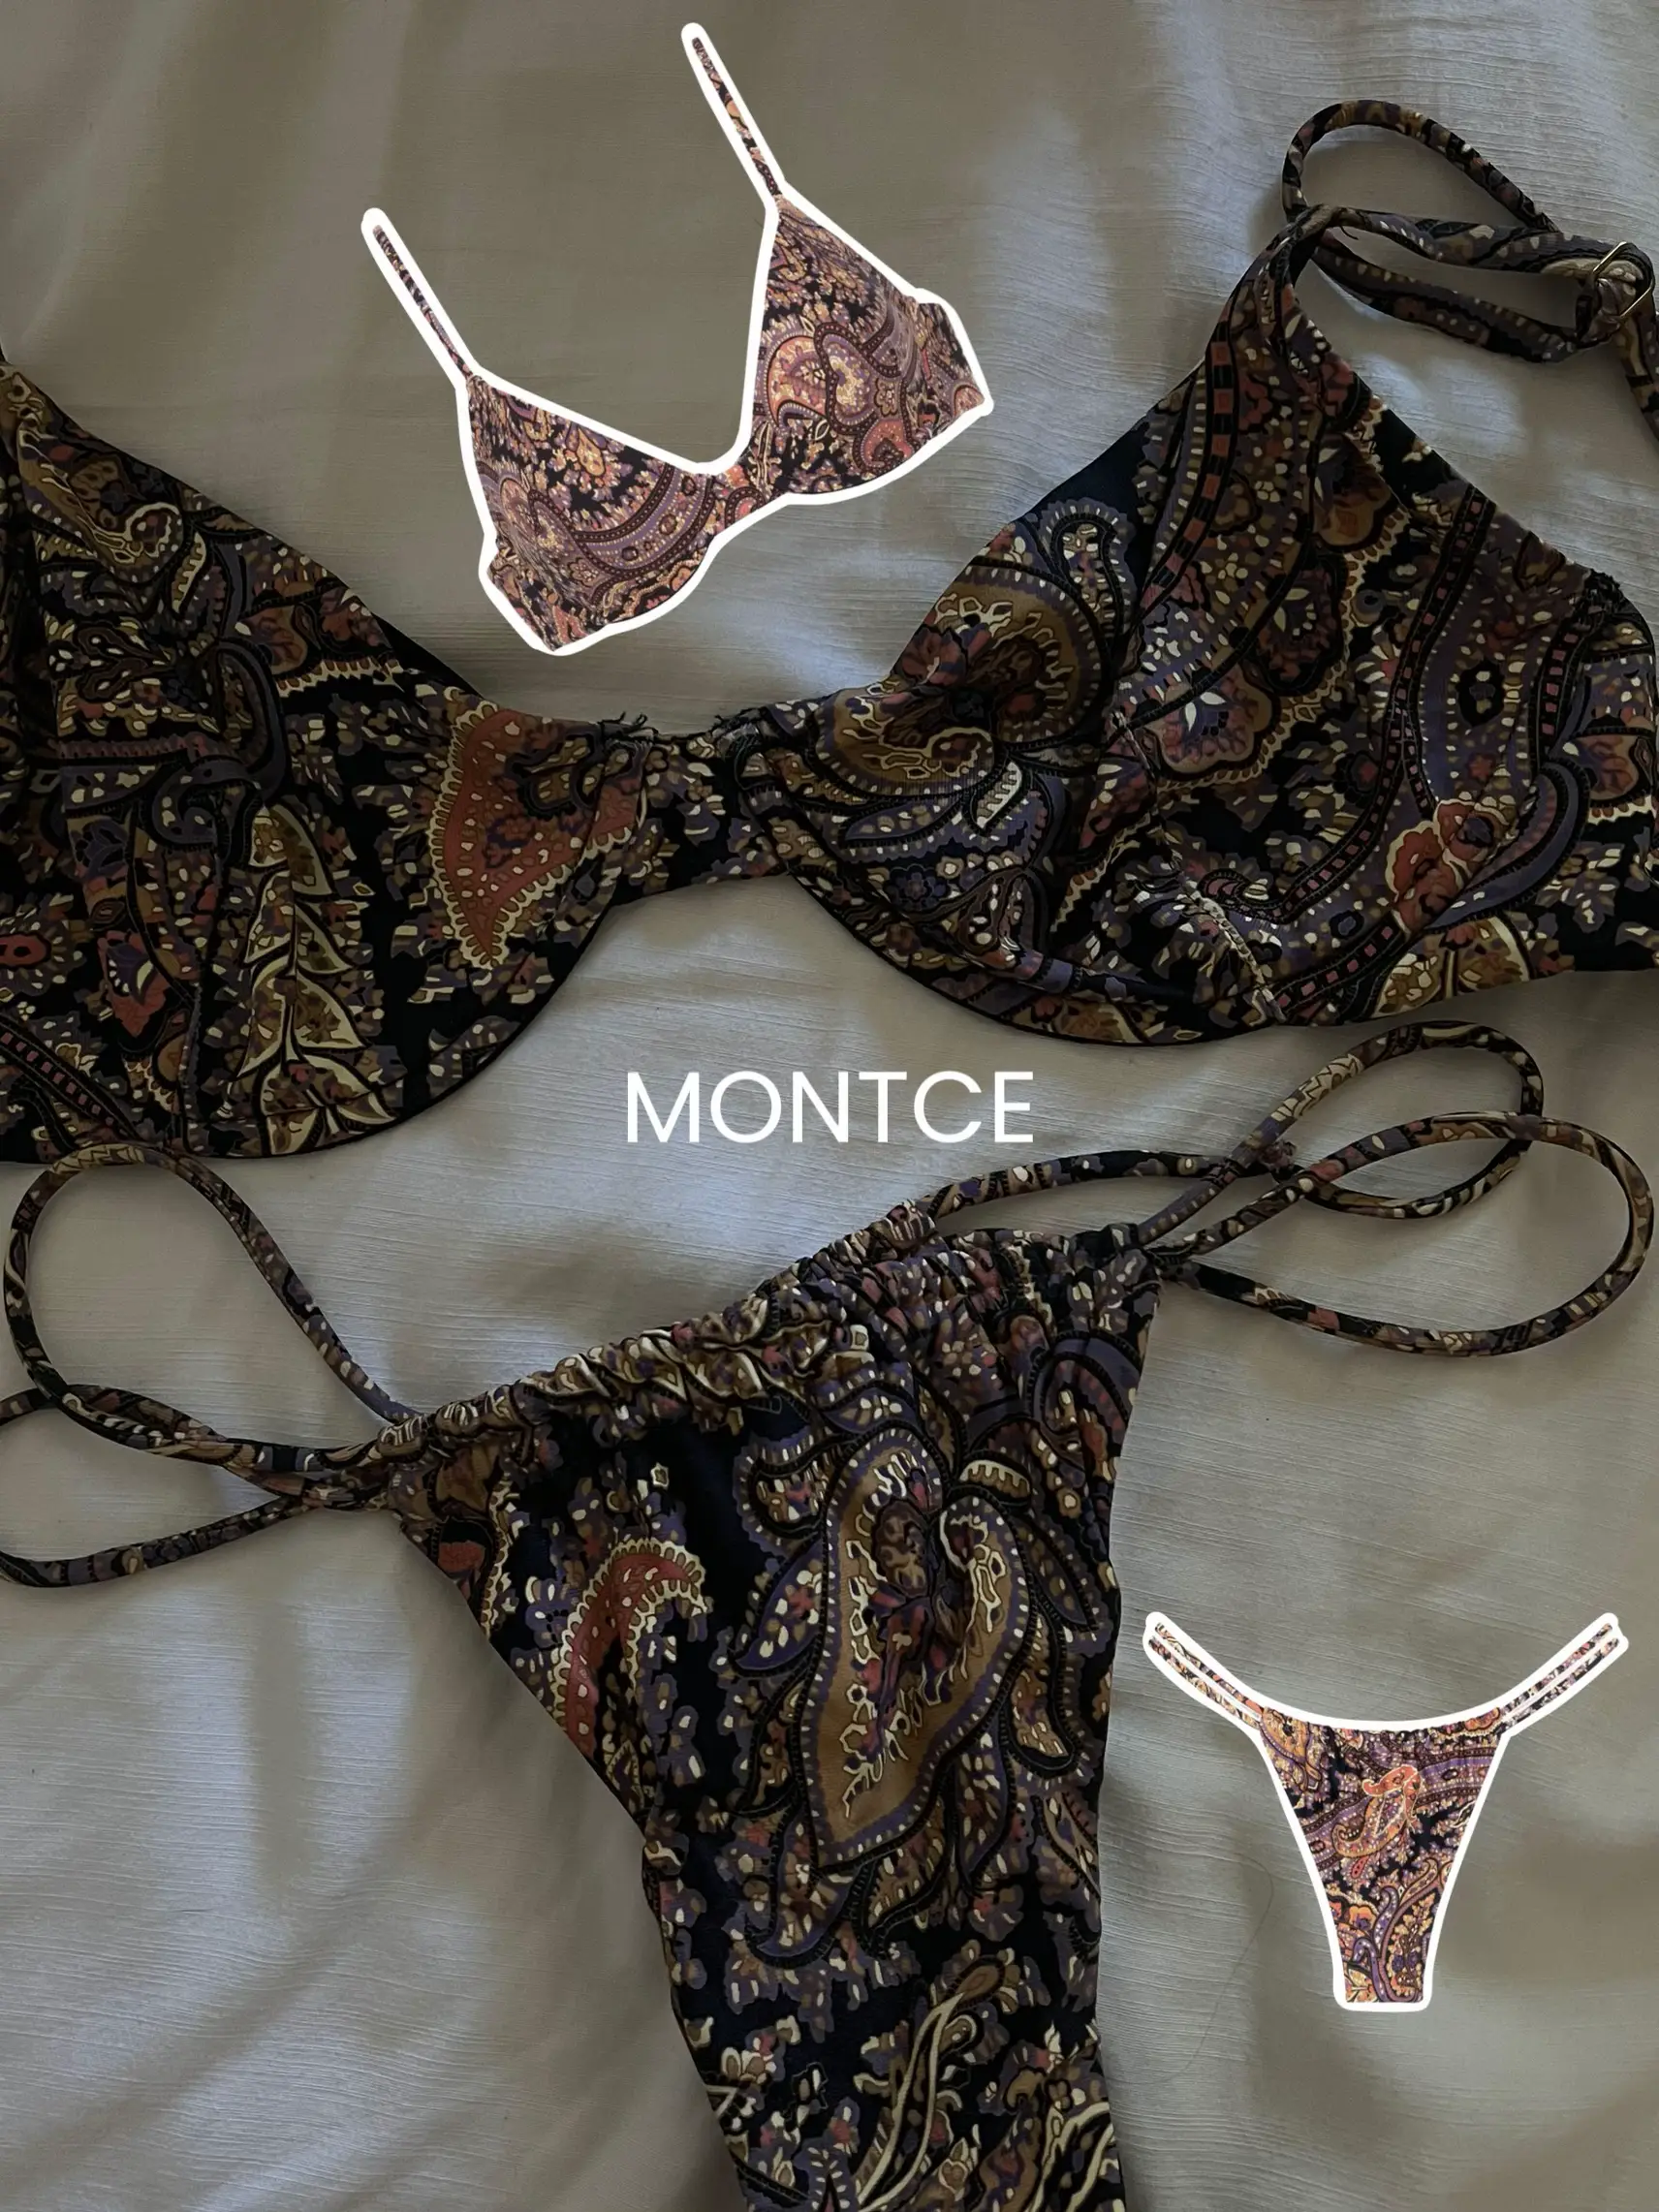 SHERRYLO Thong Bikini Two Pieces Bathing Suit for Women Triangle Top  Brazilian Bottom S-XL Body